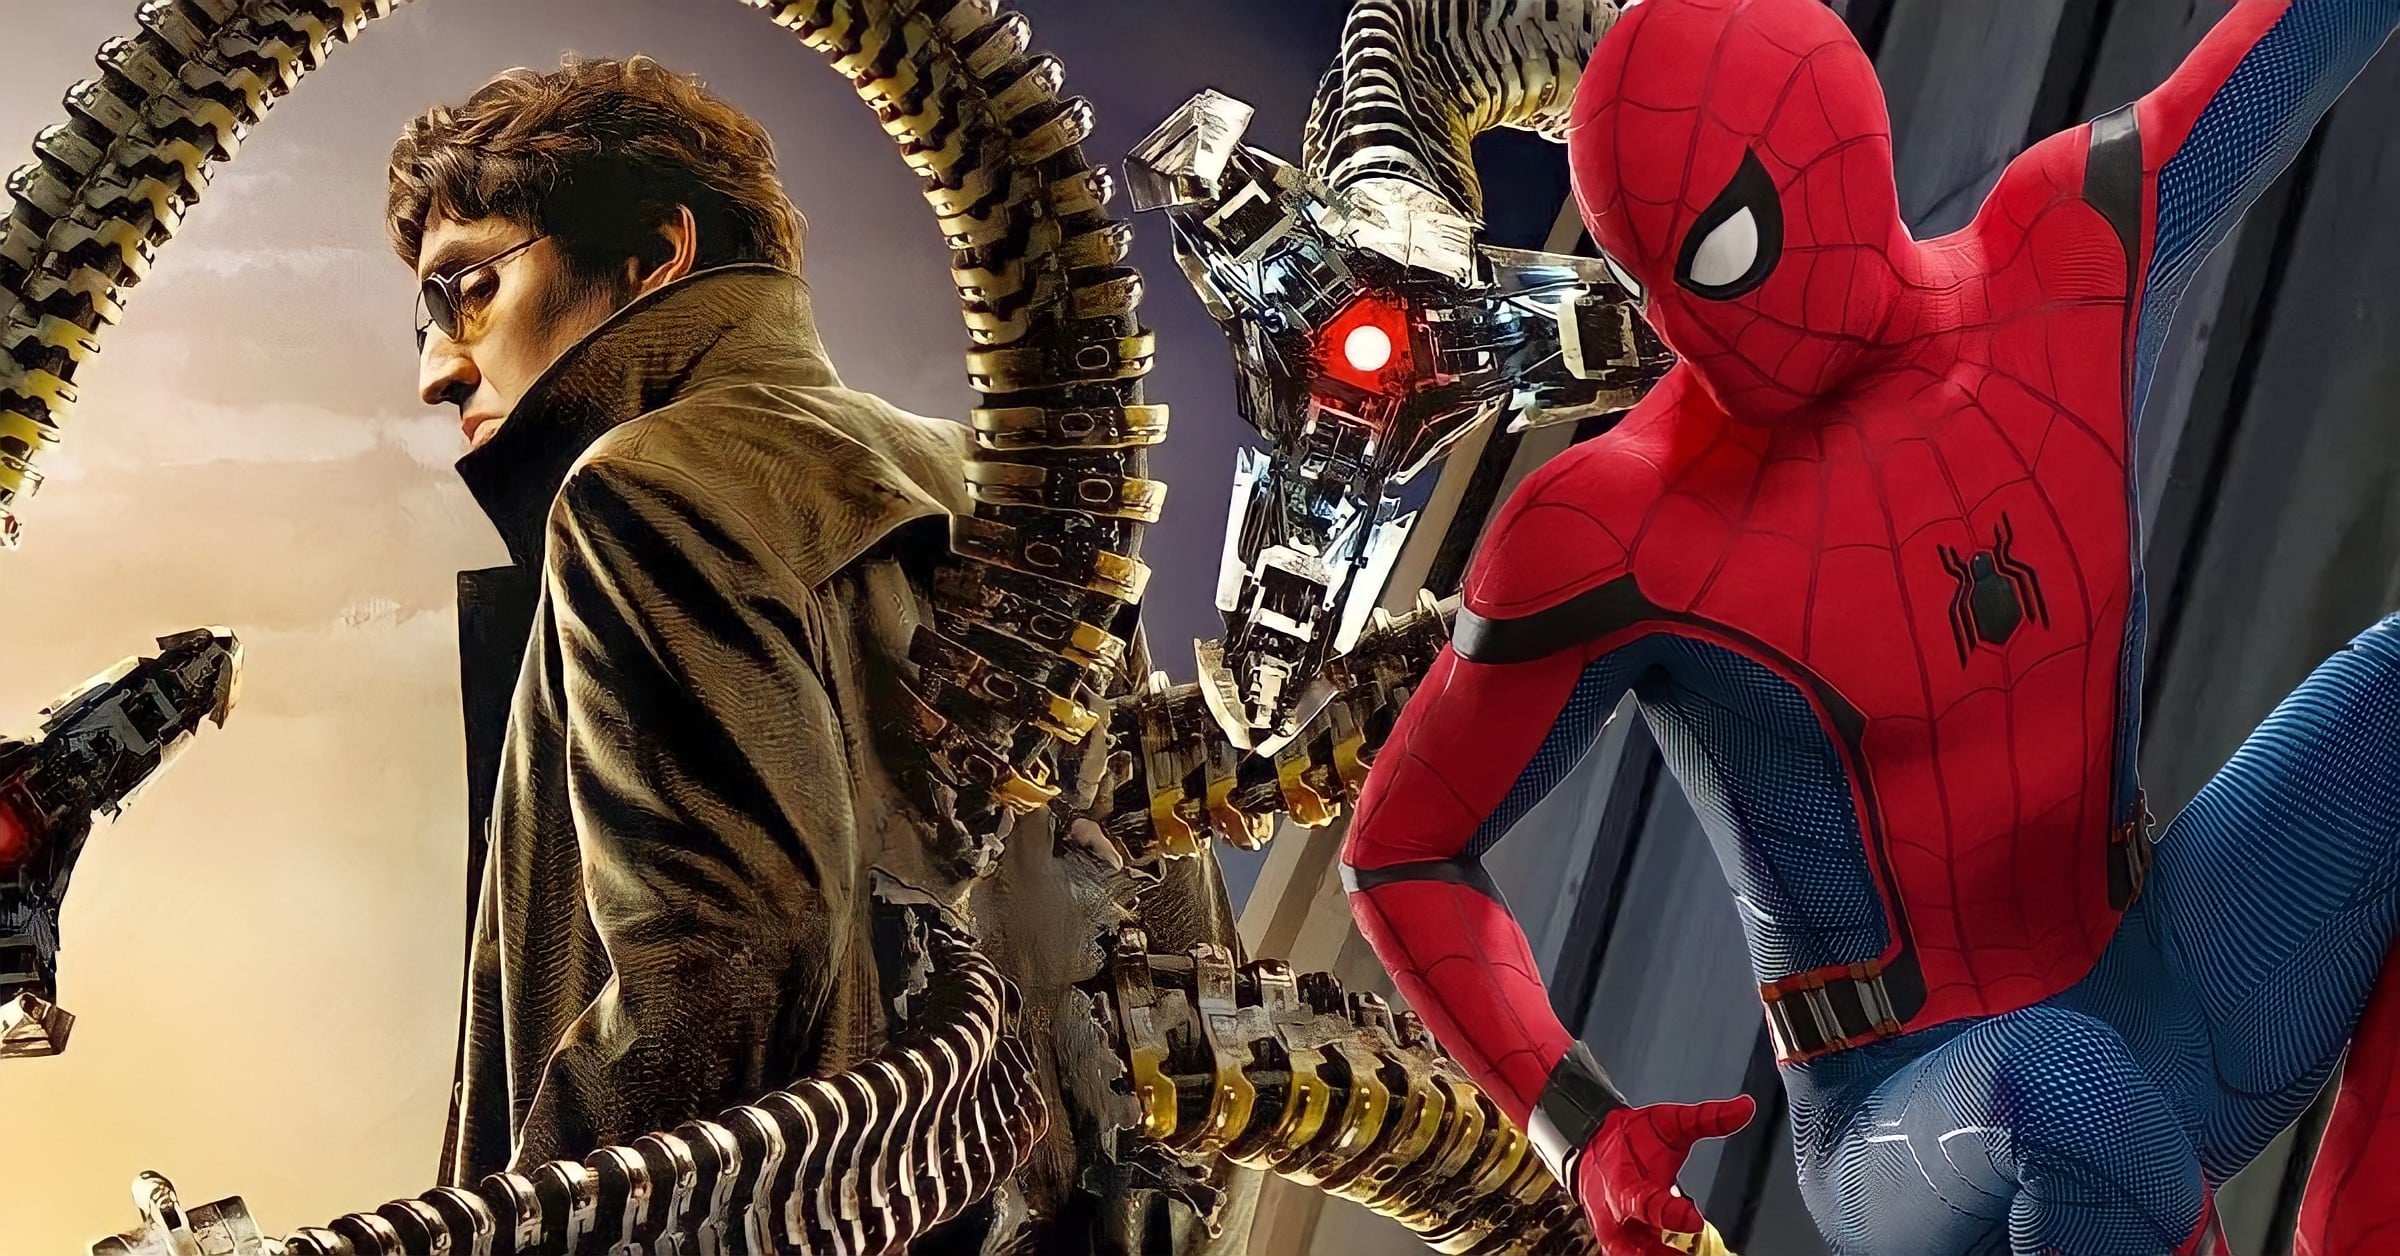 EKSKLUZIVNO: Alfred Molina reprizirati će ulogu Doctora Octopusa u MCU 'Spider-Man 3'